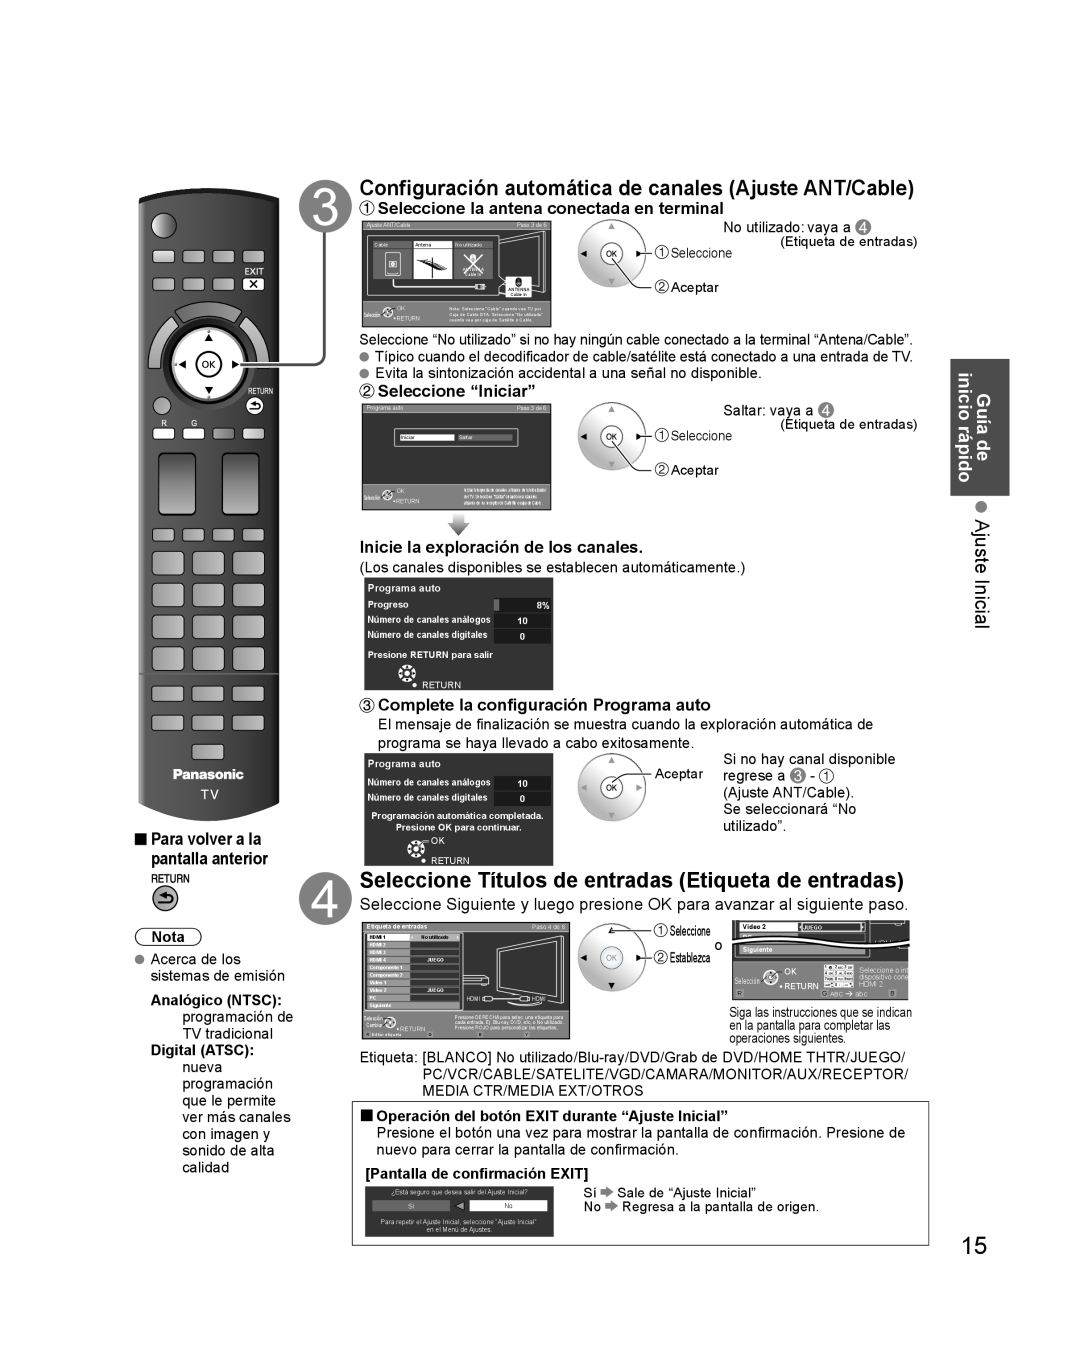 Panasonic TQB2AA0579 Configuración automática de canales Ajuste ANT/Cable, Guía de Ajuste Inicial inicio rápido, Nota 